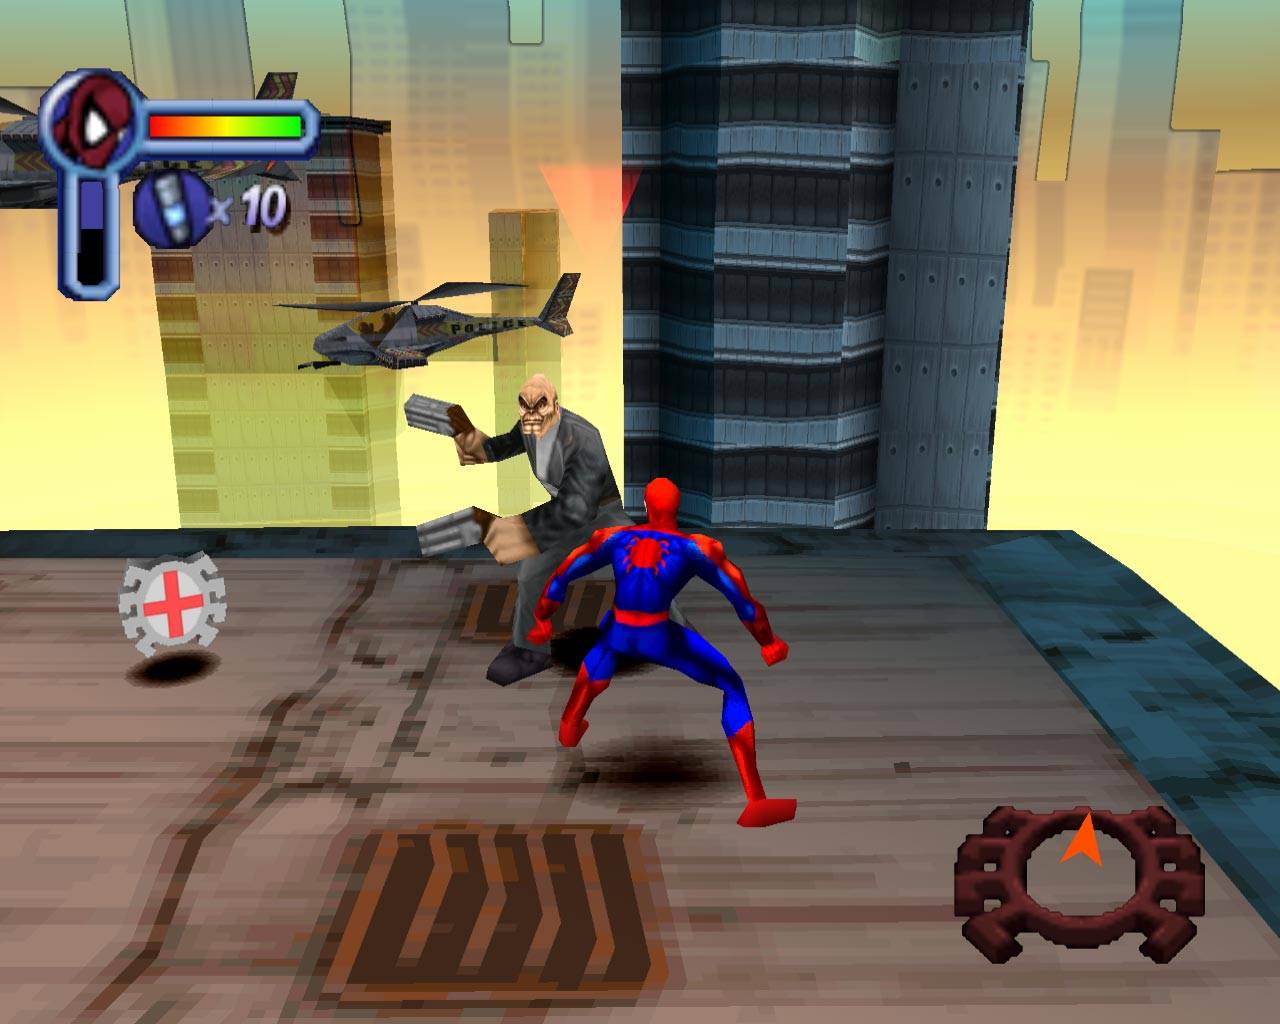 Играть про 1. Spider-man (игра, 2000). Spider man 2000 ps1 Paradox. Spider man Sony PLAYSTATION 1. Spider man 2000 ps1 игавыйекнопки.